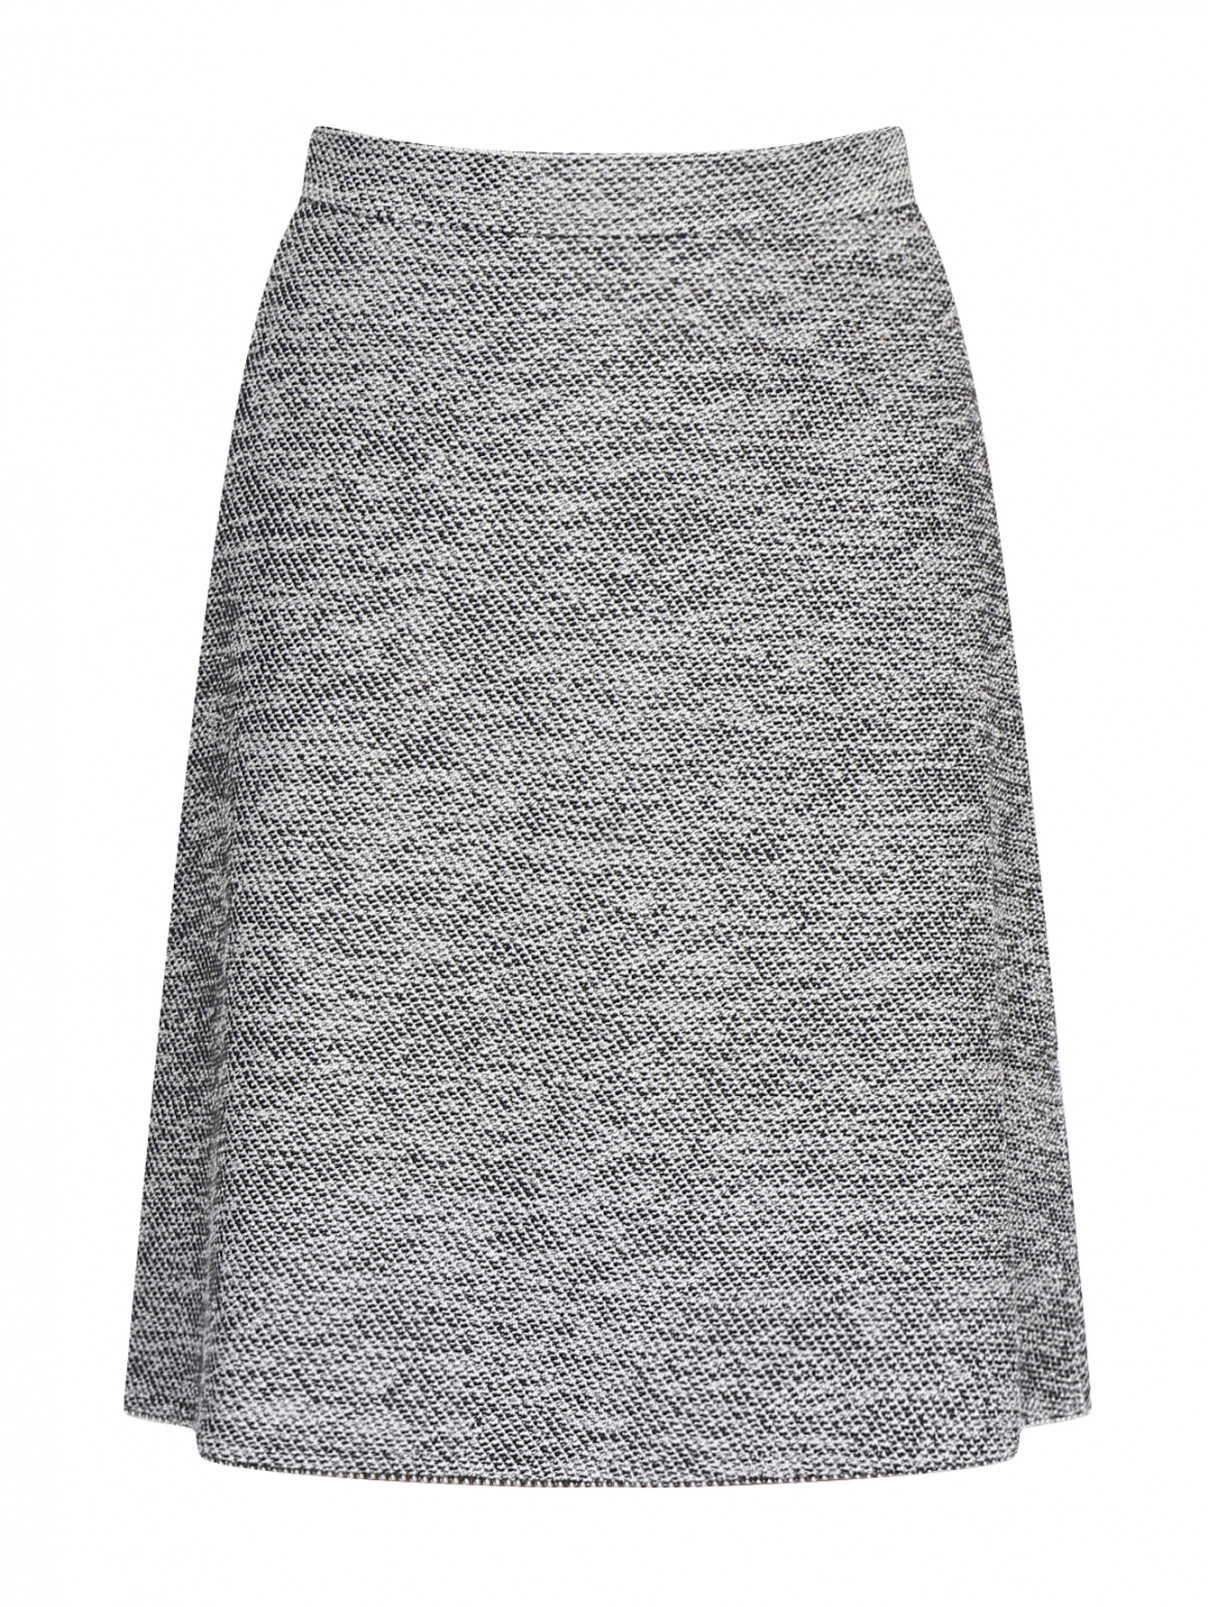 Трикотажная юбка-мини Max&Co  –  Общий вид  – Цвет:  Серый